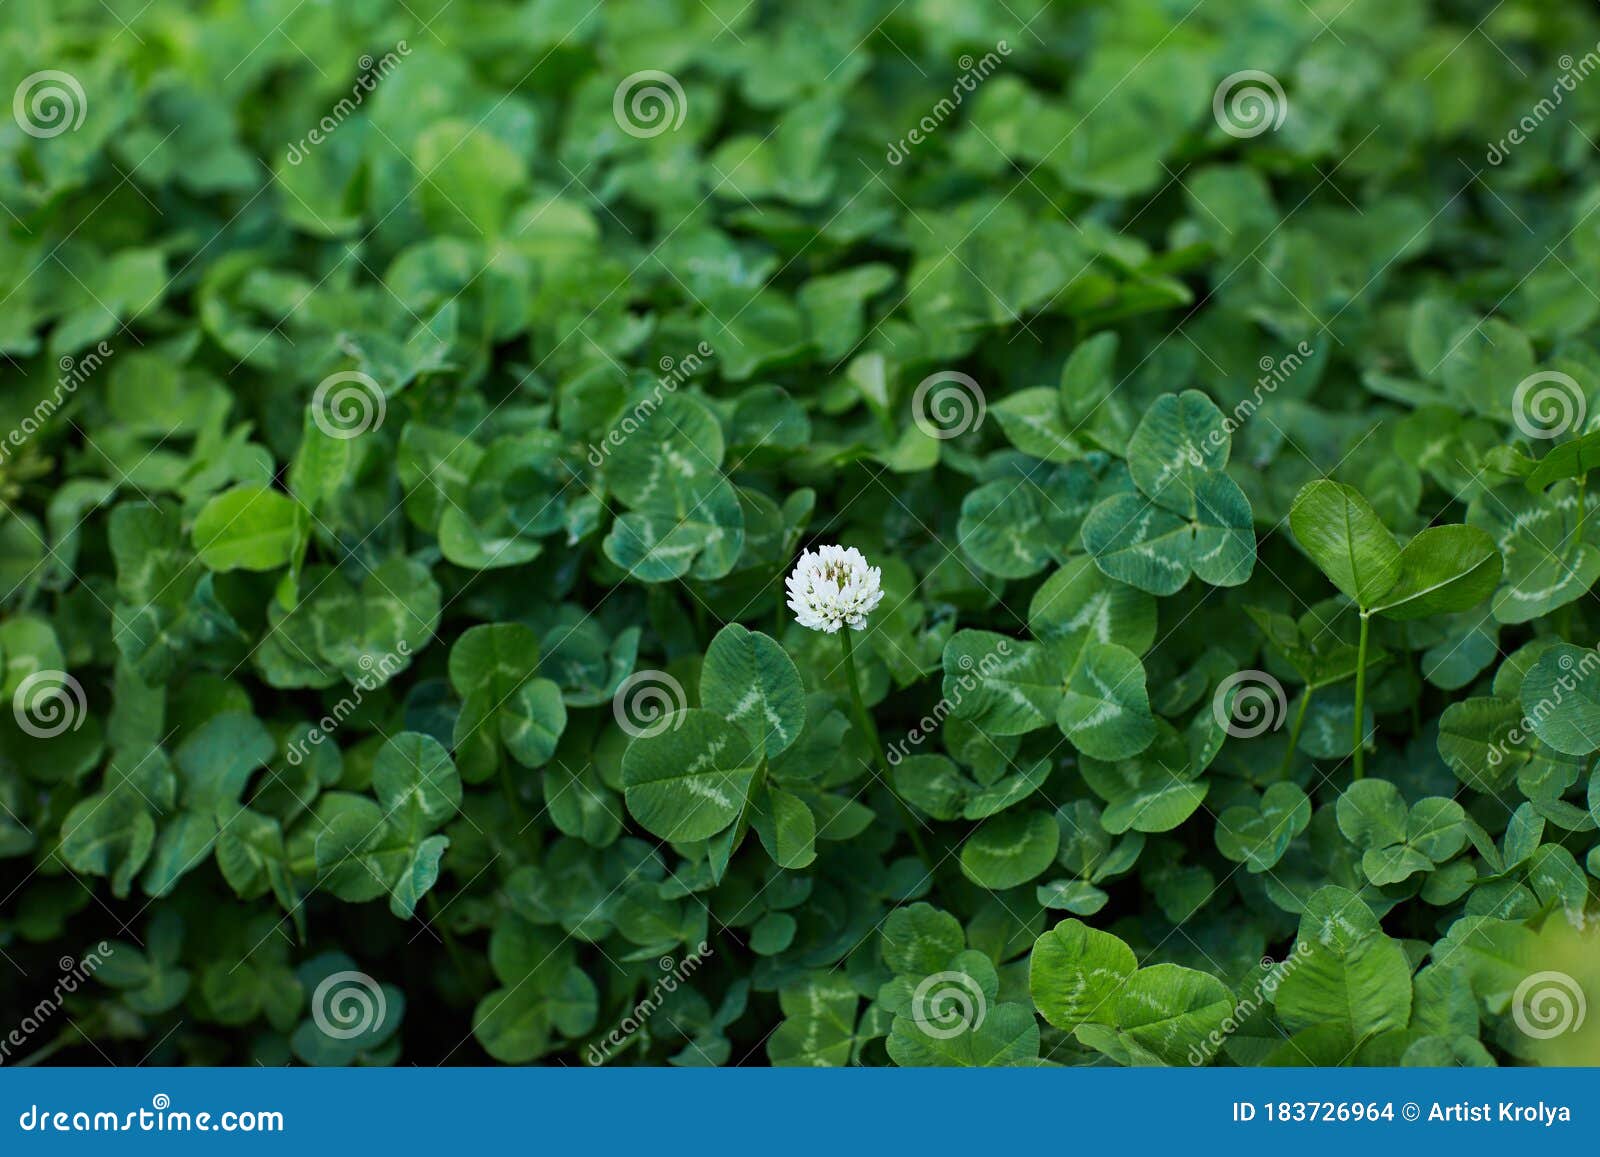 white clover, dutch clover, creeping amor trifolium repens